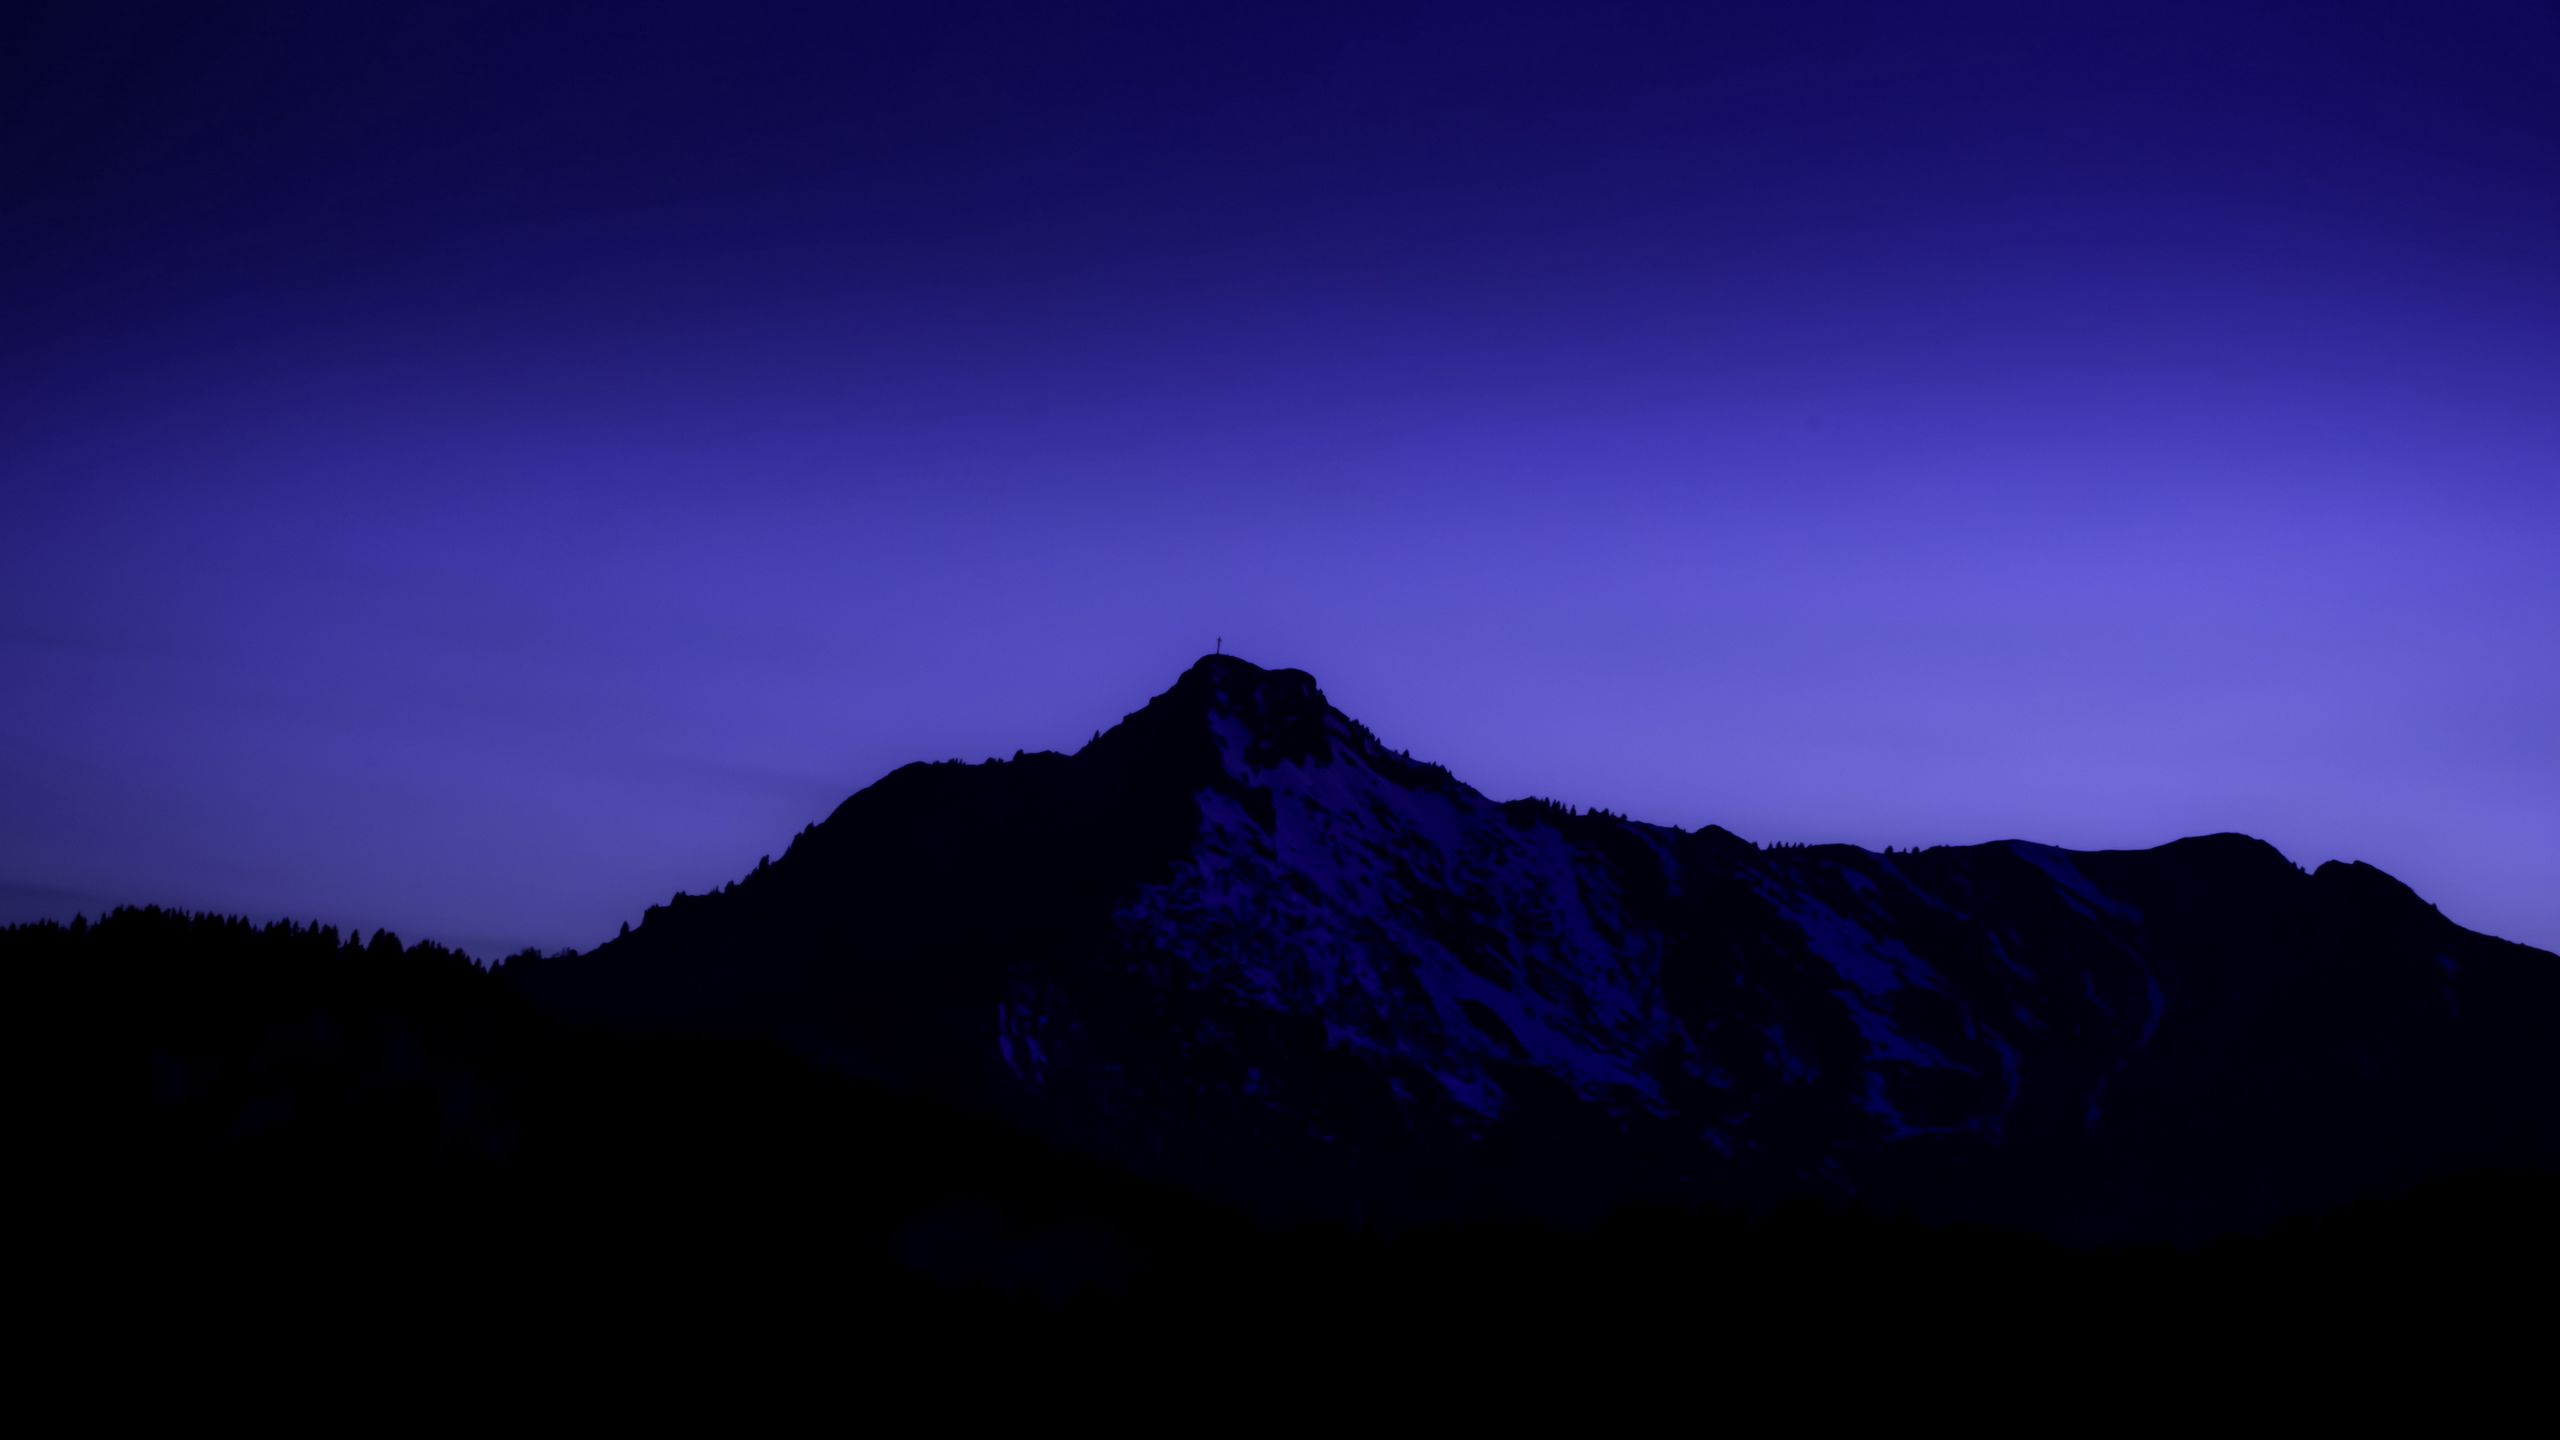 Hãy đắm mình vào khung cảnh đầy cảm hứng với núi đồi phủ lên lớp tím thật lung linh. Hình ảnh này chắc chắn sẽ khiến bạn trầm trồ với sự kết hợp tuyệt vời giữa núi non đầy sức sống và gam màu tím đẹp mê hồn. Translation: Immerse yourself in an inspirational landscape with mountains covered in a glimmering purple hue. This image will definitely leave you mesmerized with the perfect combination of lively mountains and enchanting purple color.